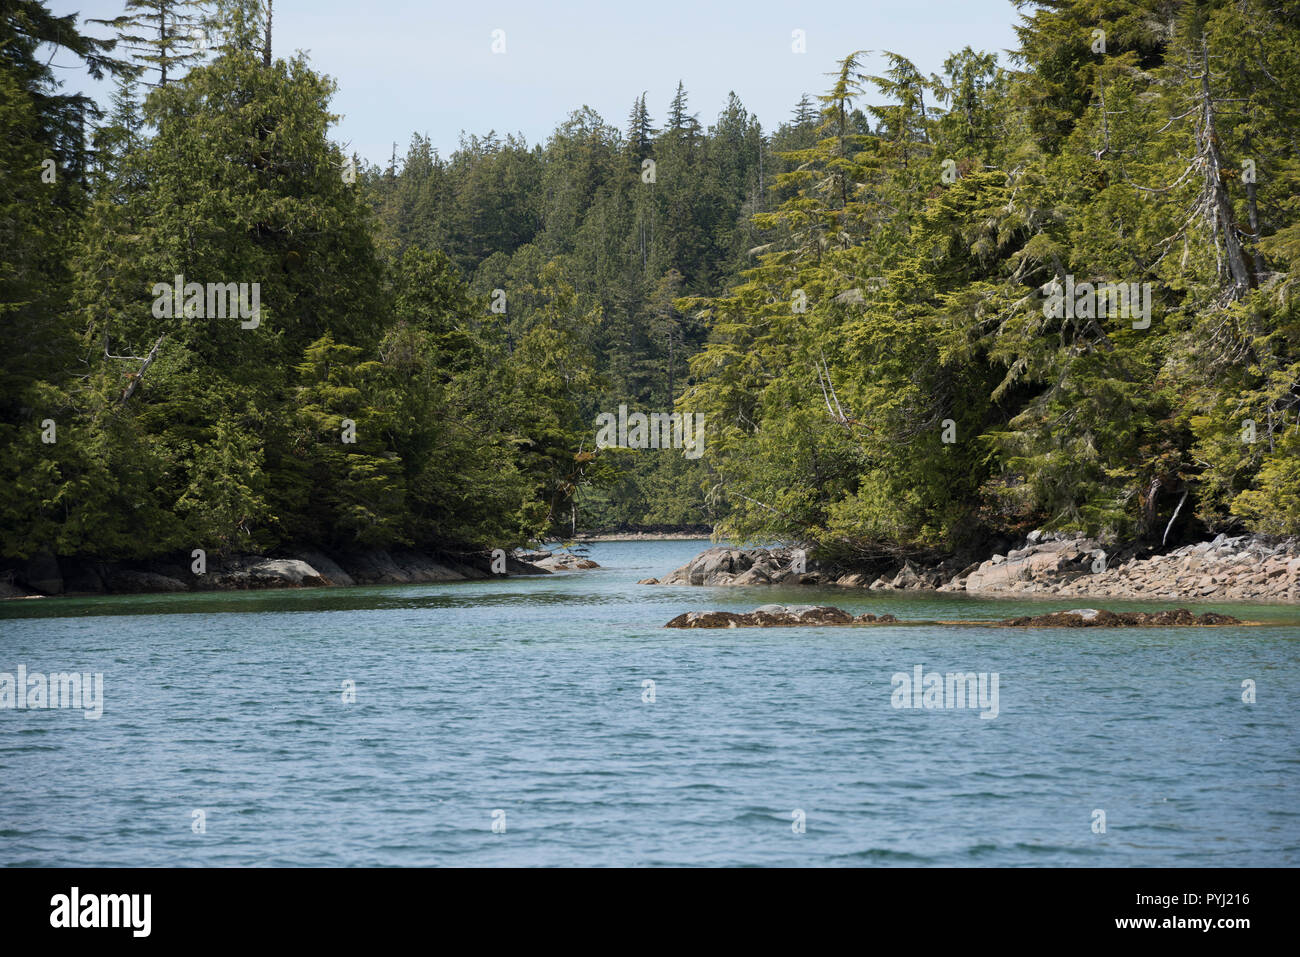 Le rotte delle isole del gruppo è un gruppo di piccole isole e isolotti in suono di Barkley sulla costa occidentale dell'isola di Vancouver, British Columbia, Canada. Foto Stock